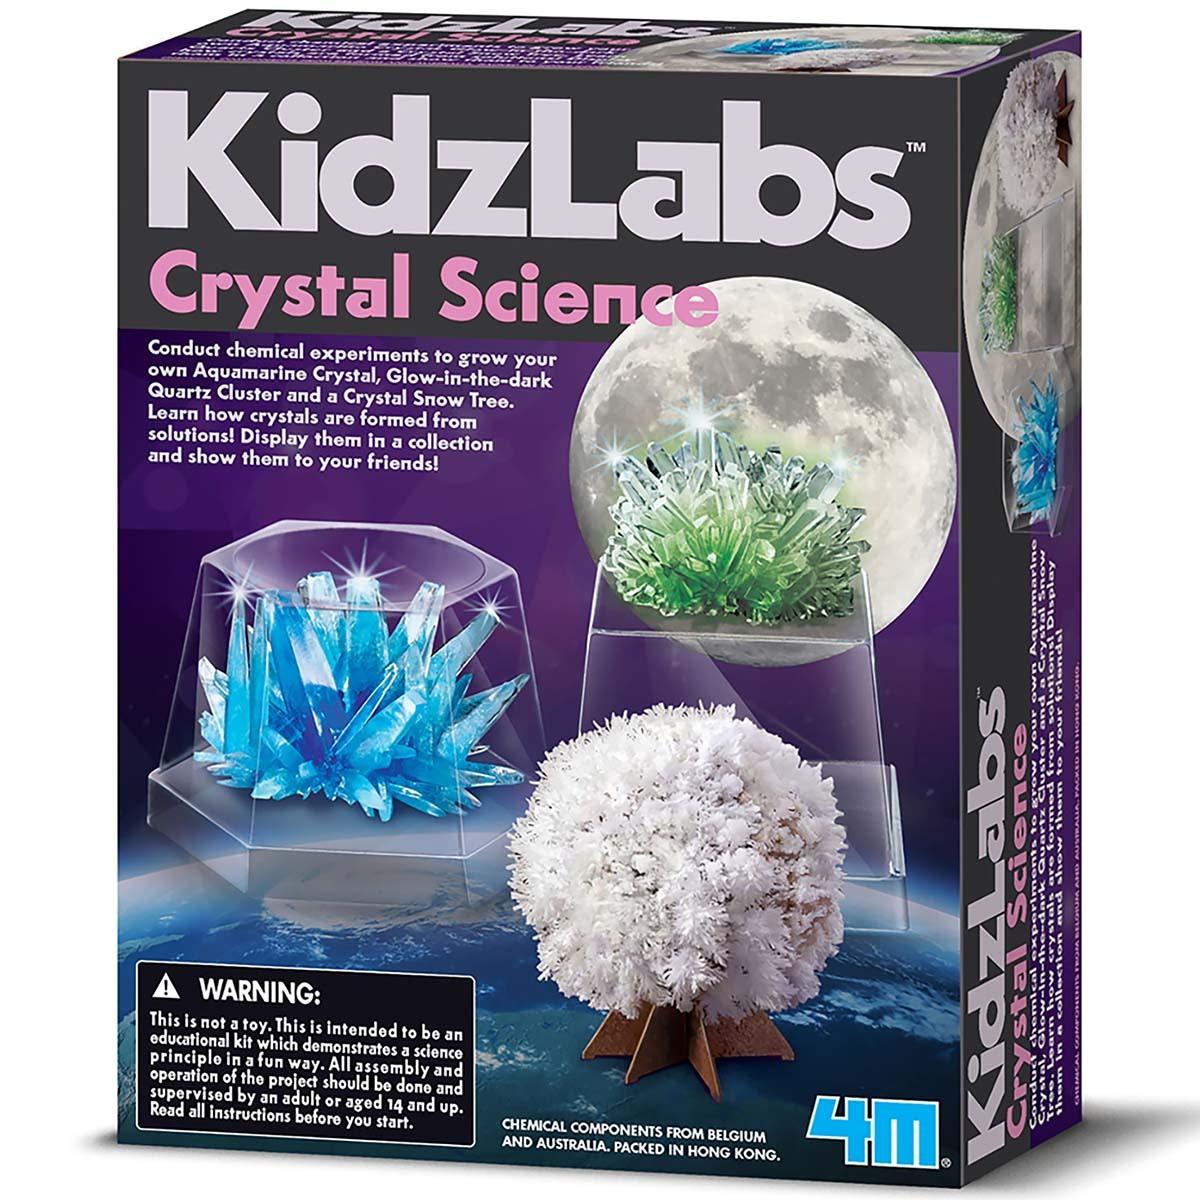 Kidz Labs Crystal Science / US